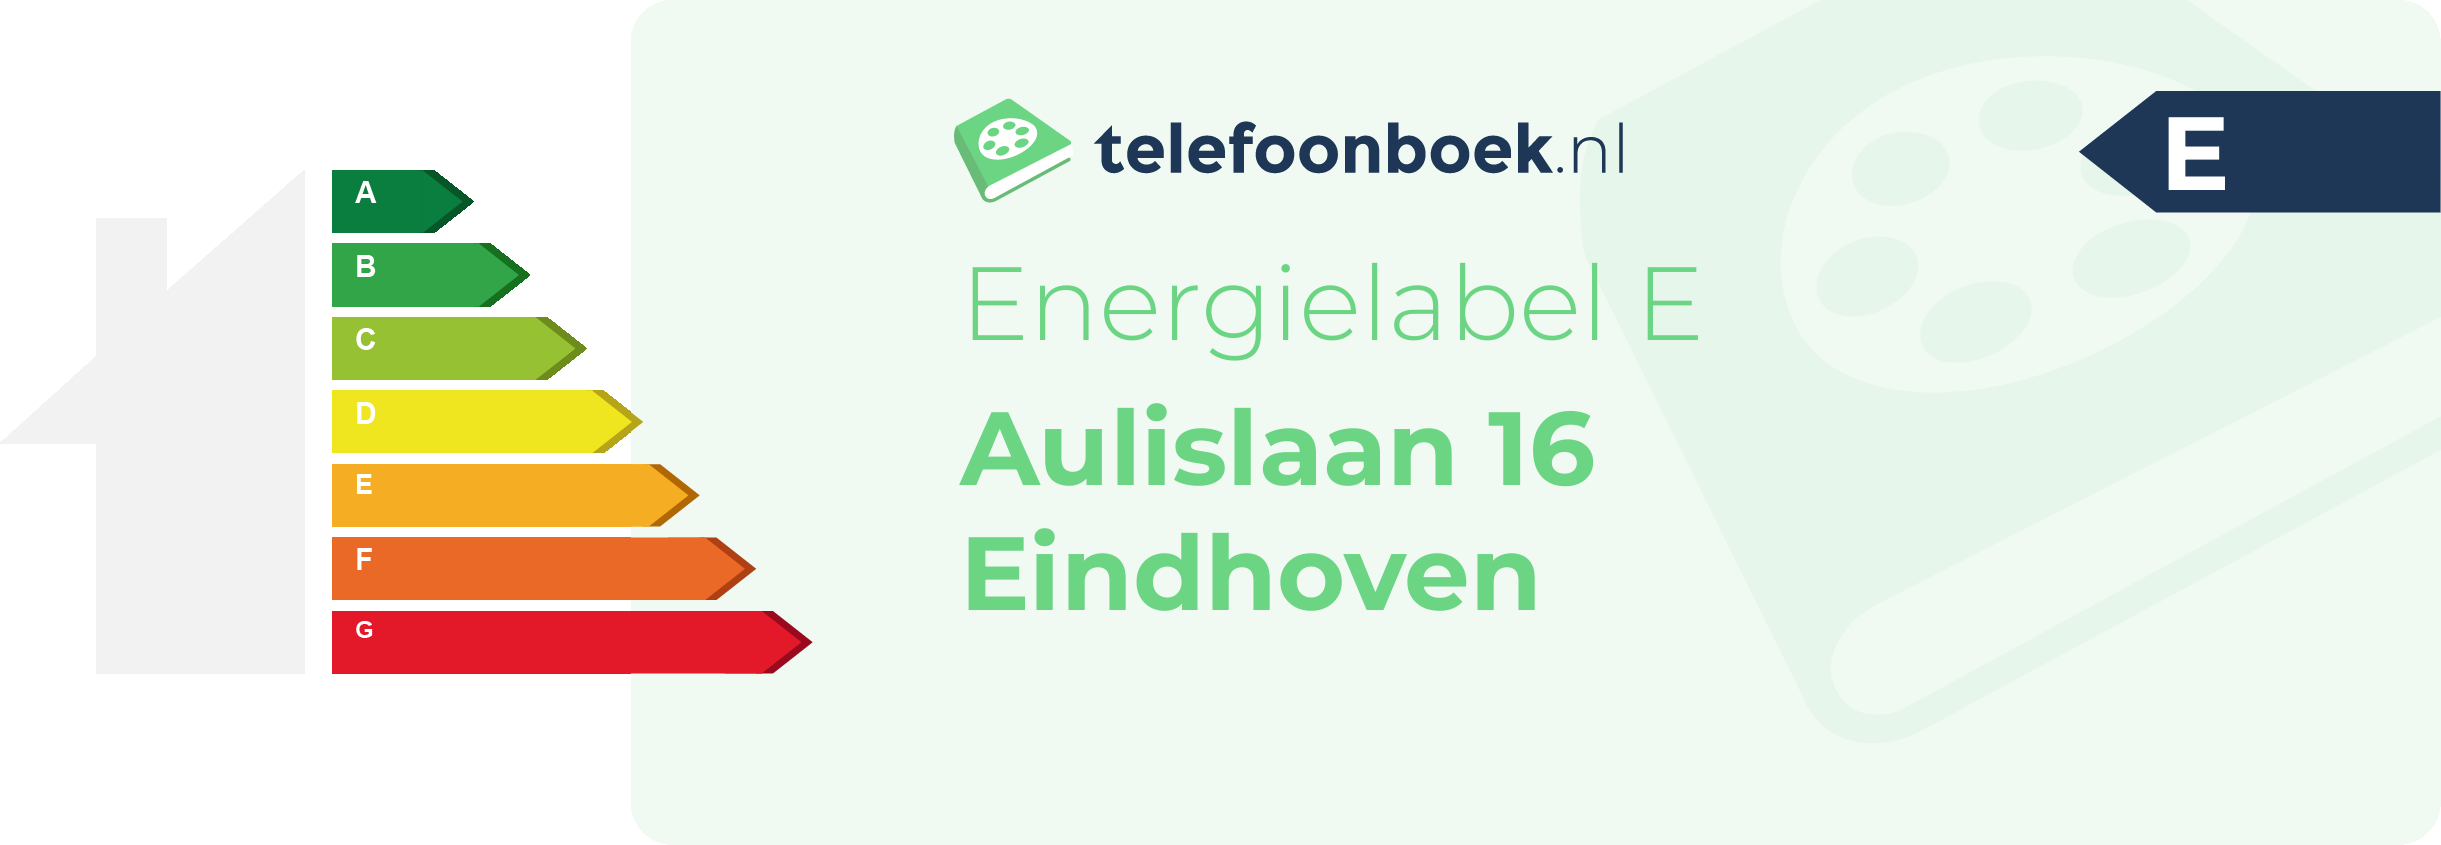 Energielabel Aulislaan 16 Eindhoven